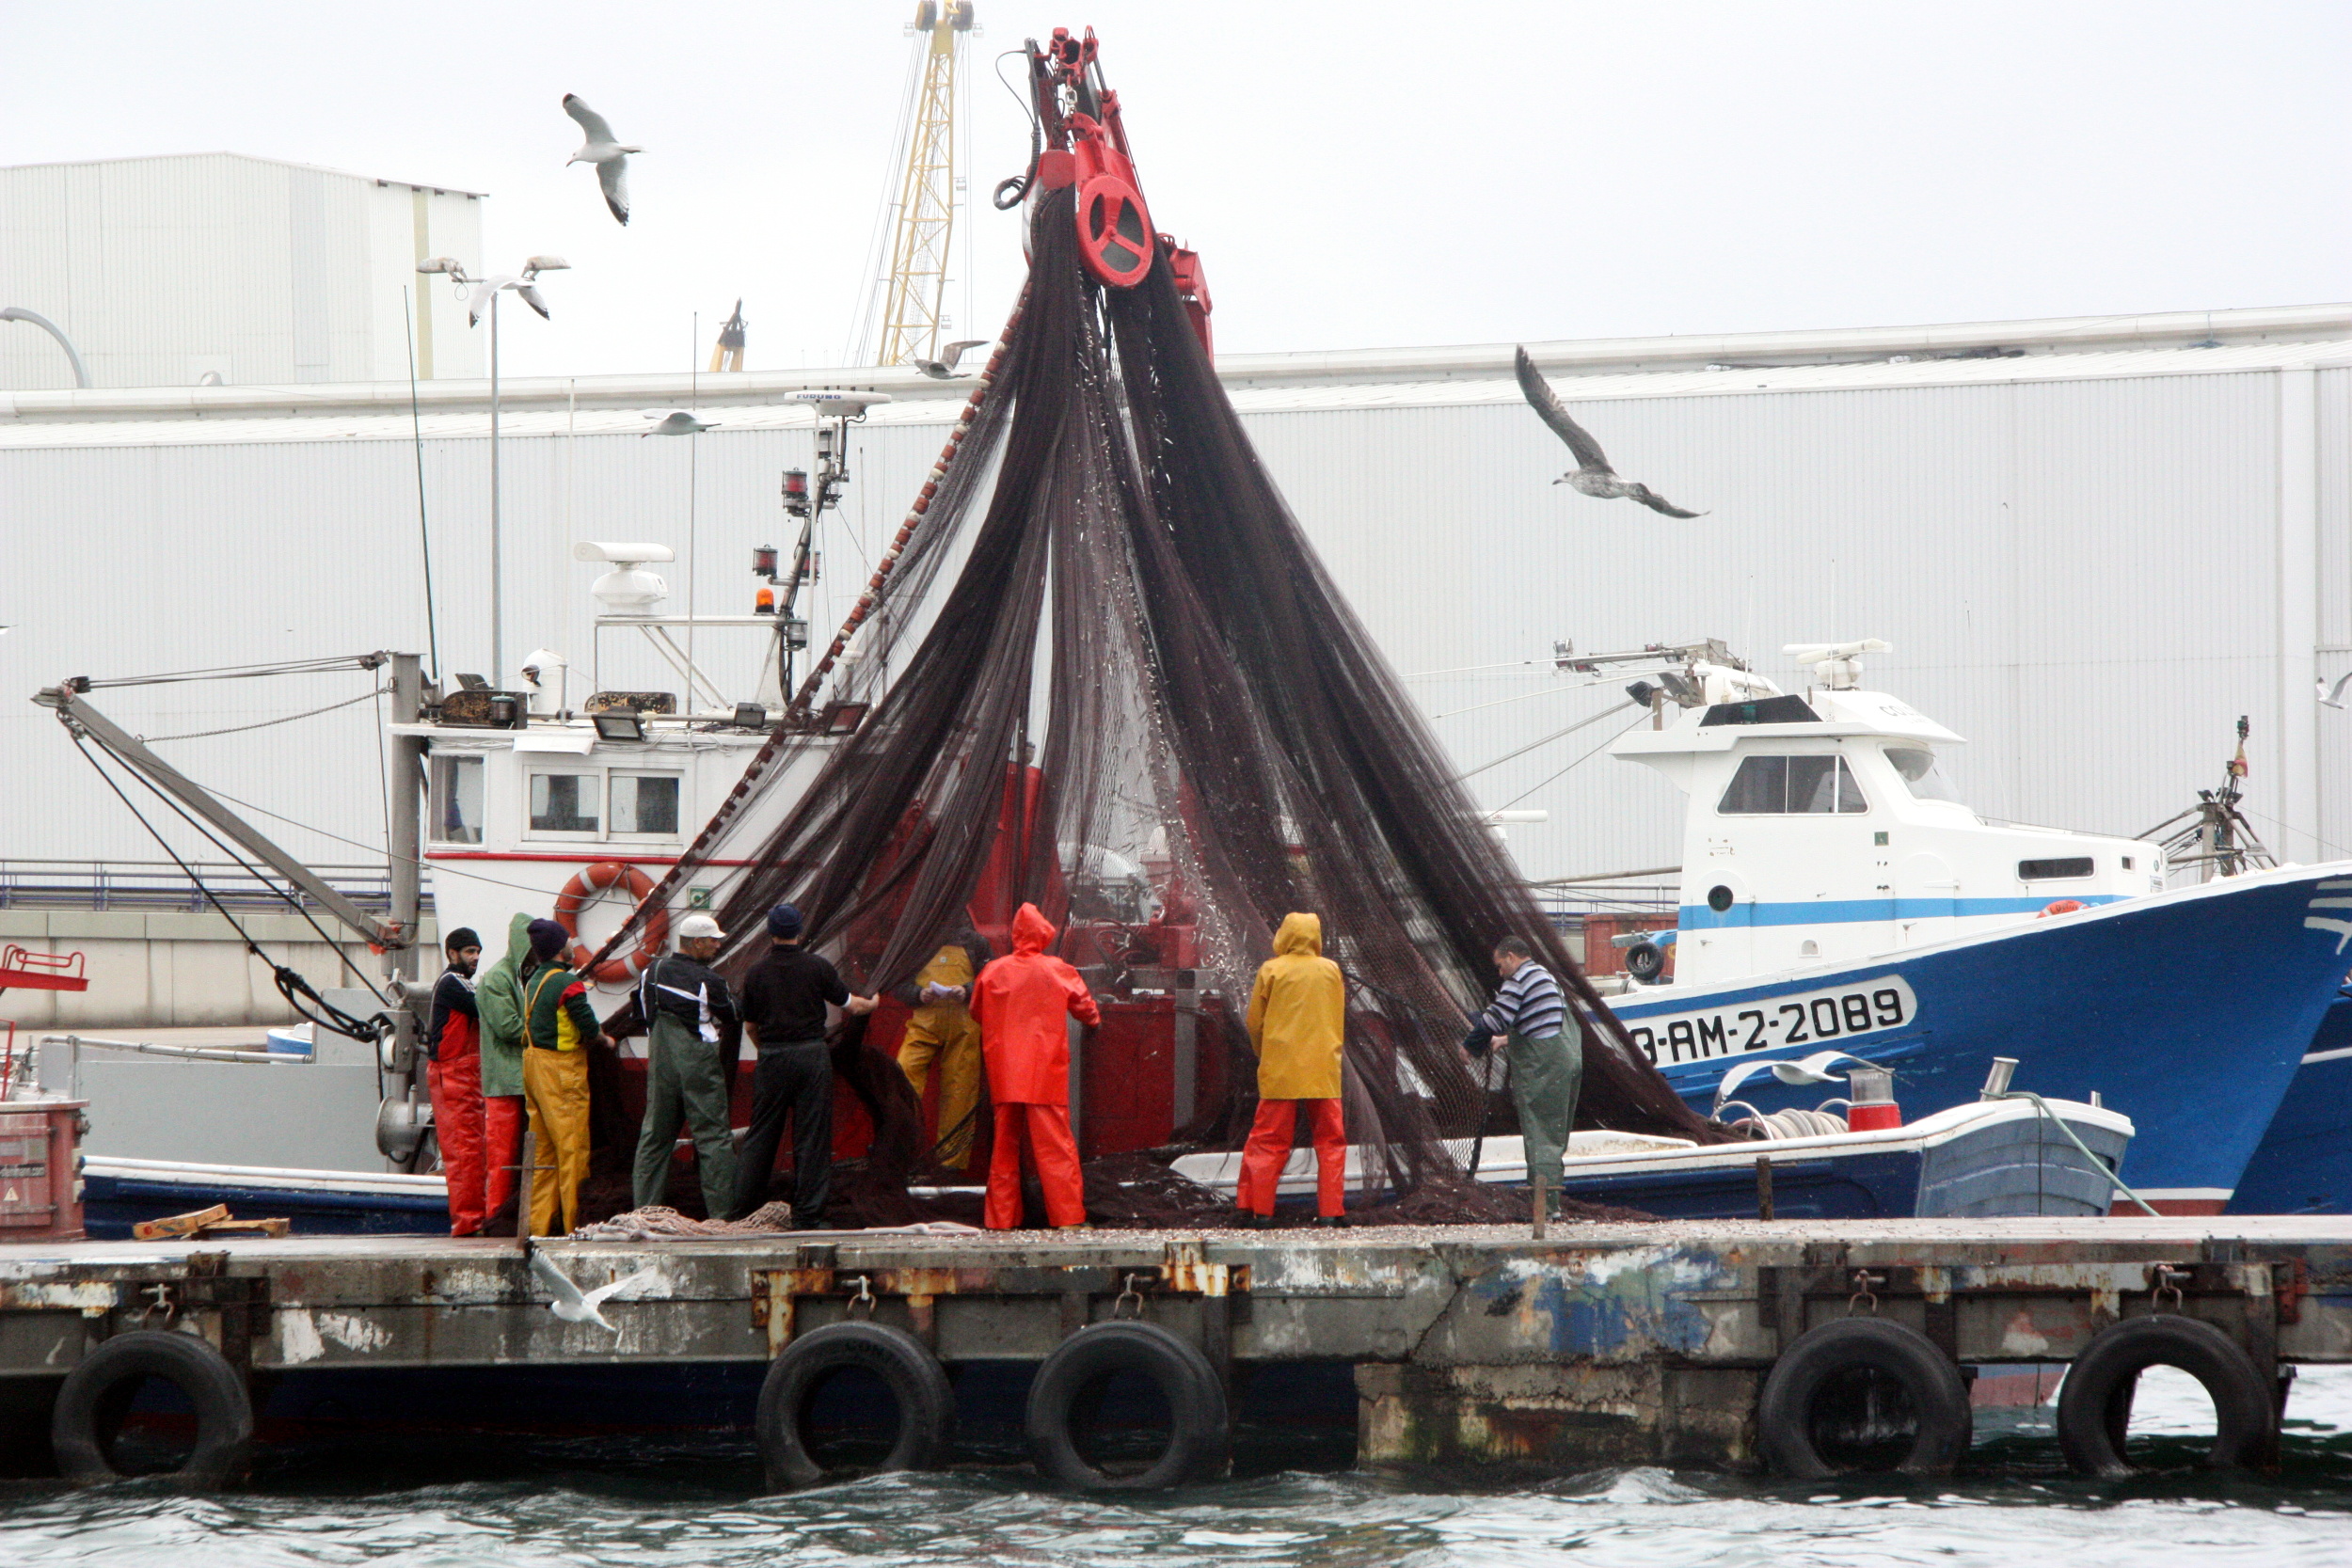 Uns mariners movent les xarxes per recollir el peix blau capturat, al Serrallo, a Tarragona | ACN, 2016